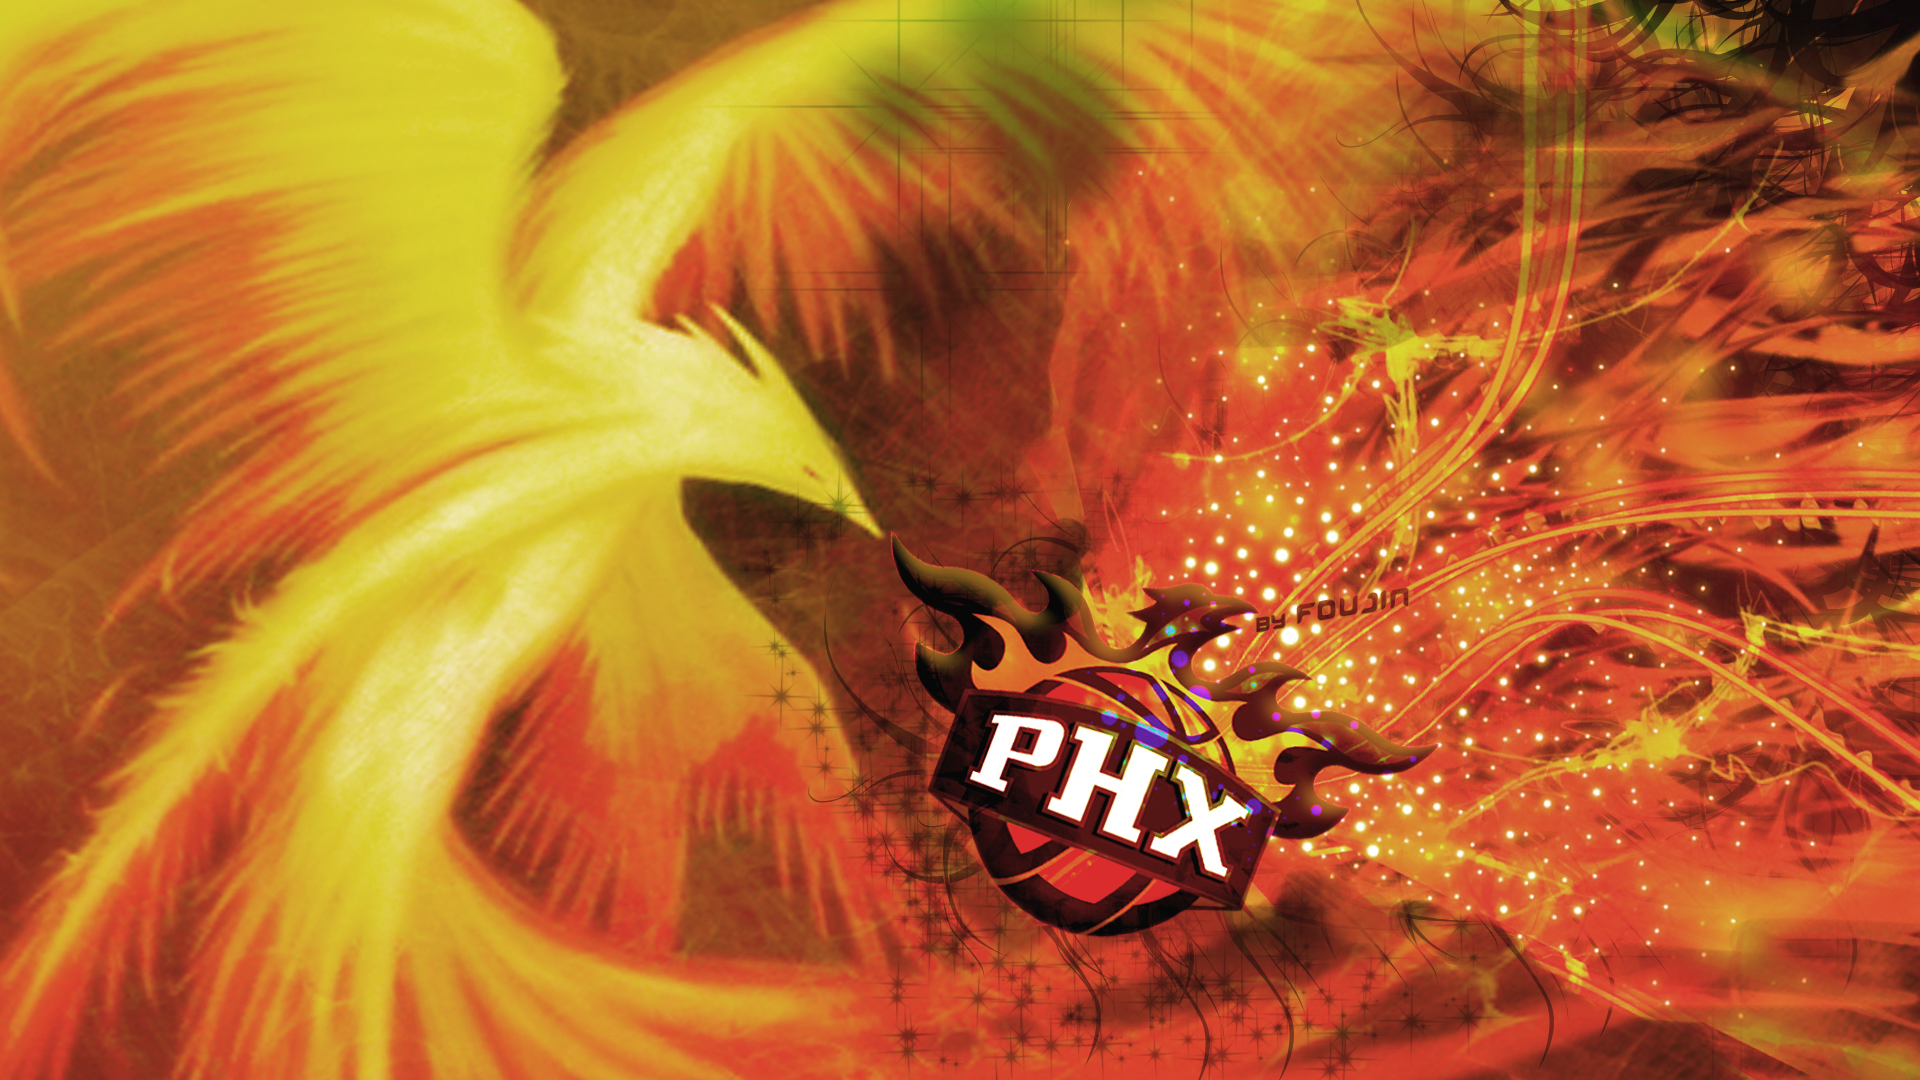 Sun, phoenix, NBA, basketball, Phoenix Suns - desktop wallpaper